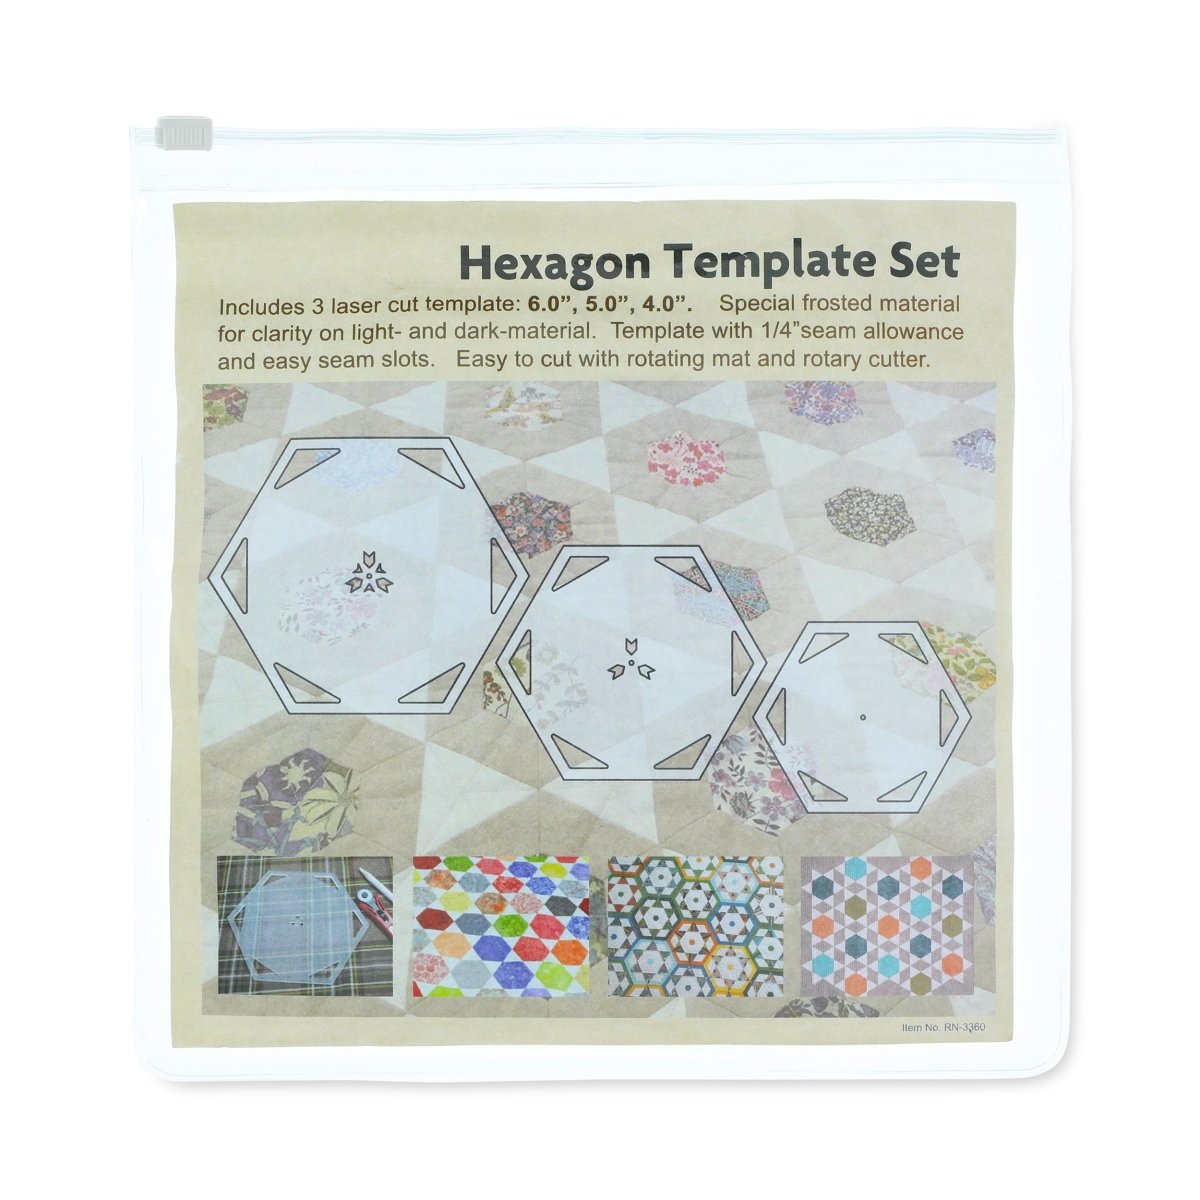 The New Hexagon Quilt Template set